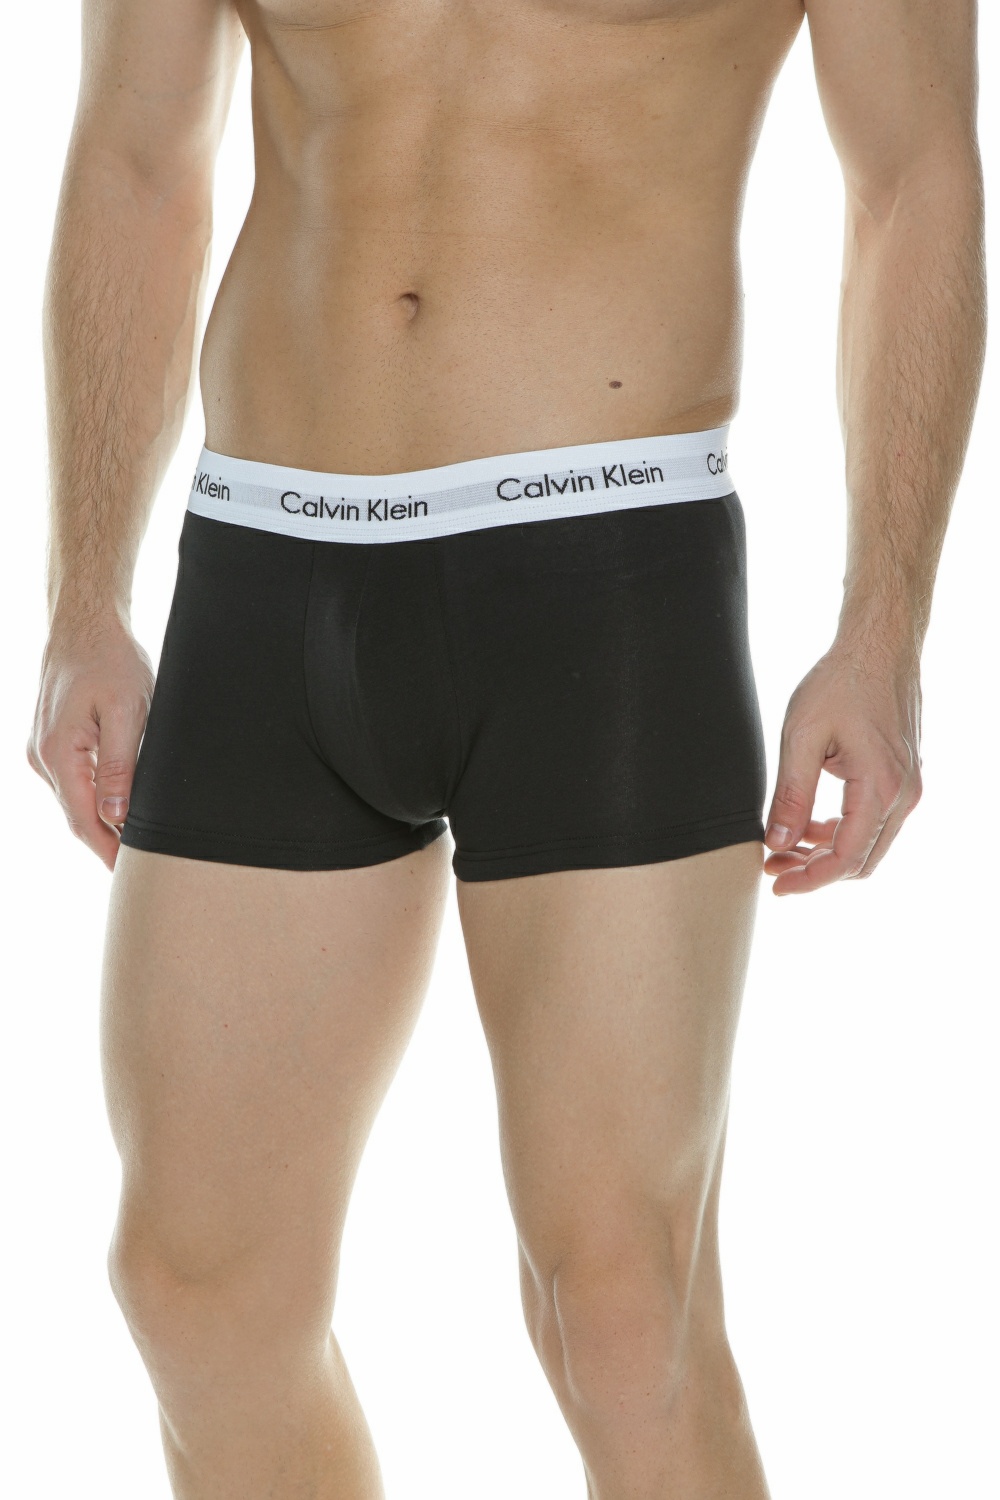 Ανδρικά/Ρούχα/Εσώρουχα/Σλίπ CK UNDERWEAR - Σετ ανδρικά εσώρουχα Calvin Klein Underwear LOW RISE μαύρο γκρι λευκό